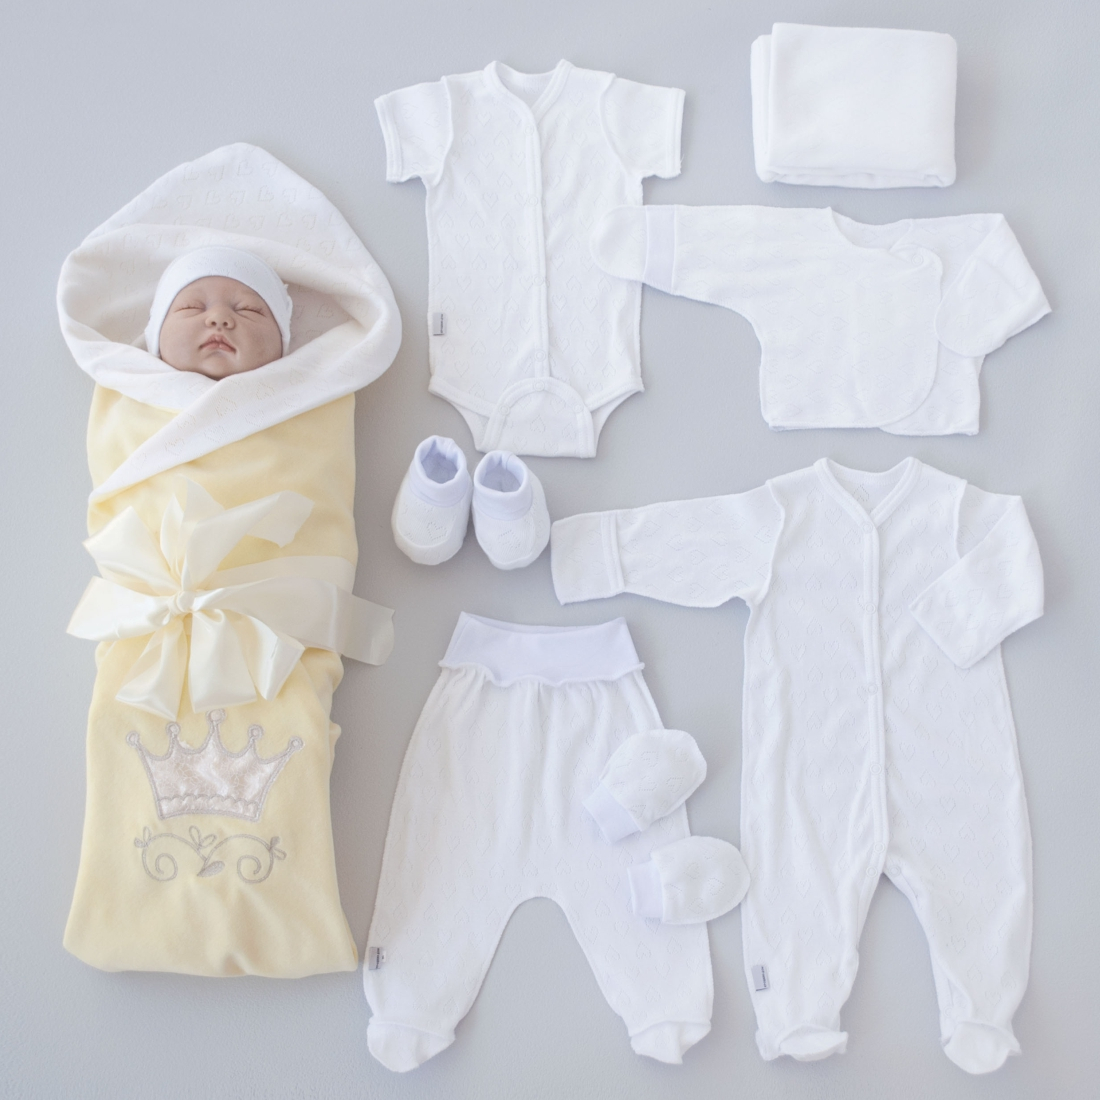 На выписку для новорожденного весной мальчиков. Крошкин дом комплекты на выписку. Комплект на выписку для новорожденных. Комплект для новорожденного на выписку летом. Одежда на выписку для новорожденных.